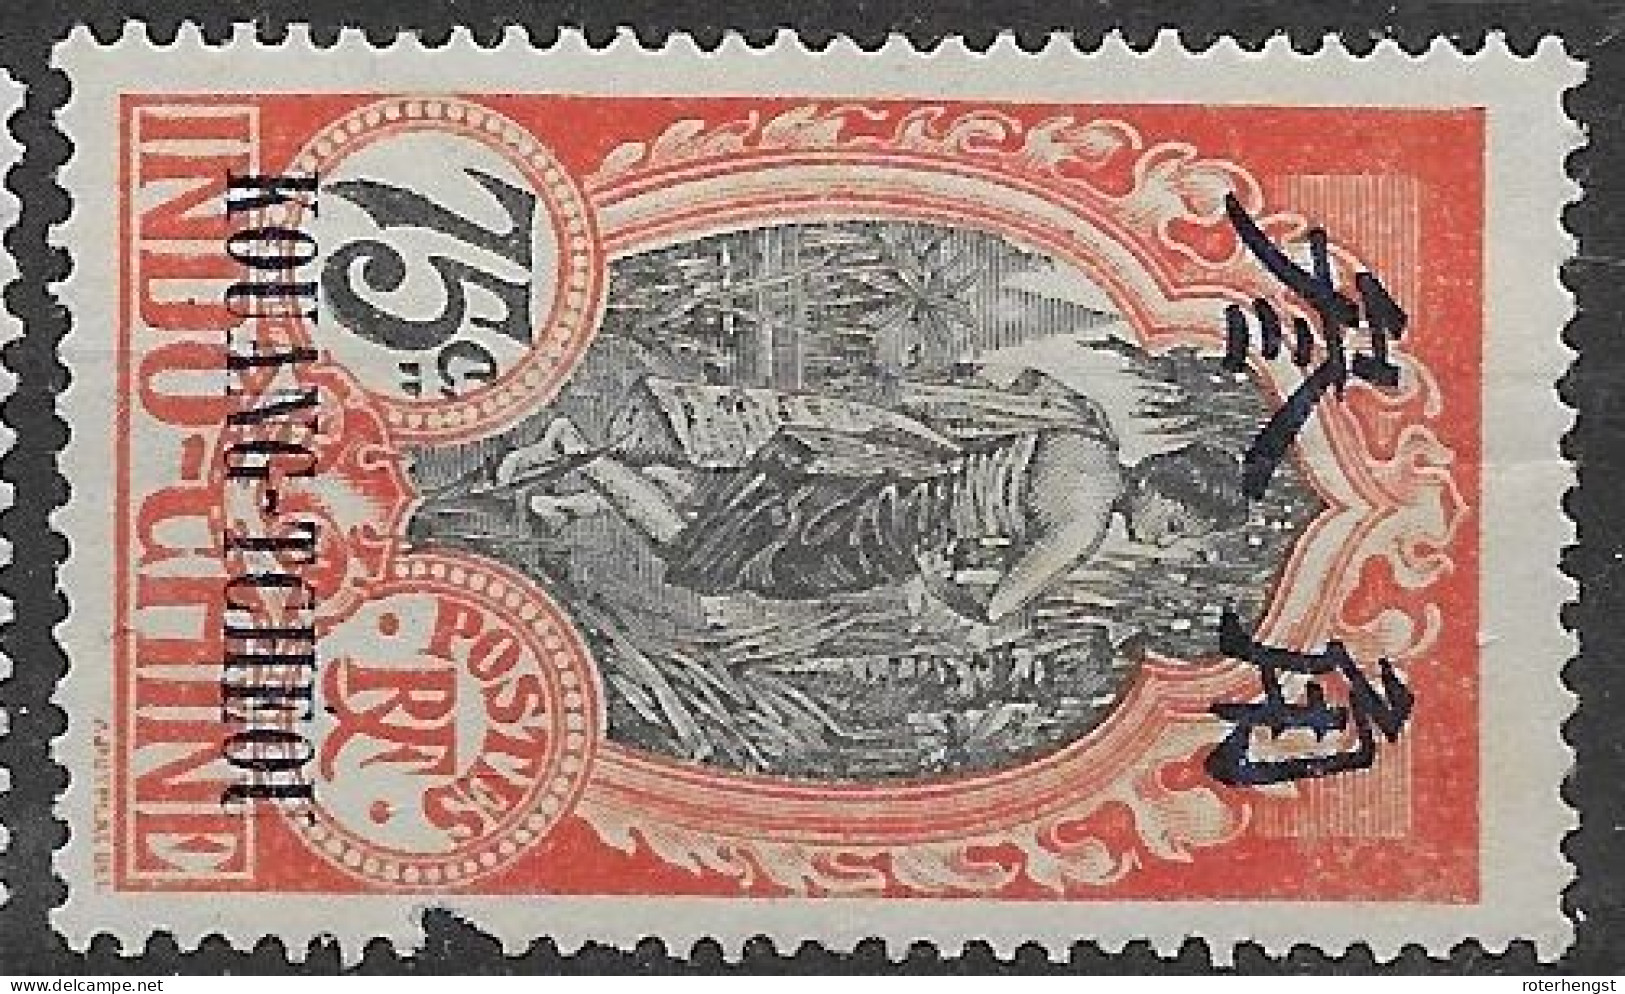 Kouang Tcheou China Mh * 1908 19 Euros (dent Manquante, Perf Fault) - Nuevos